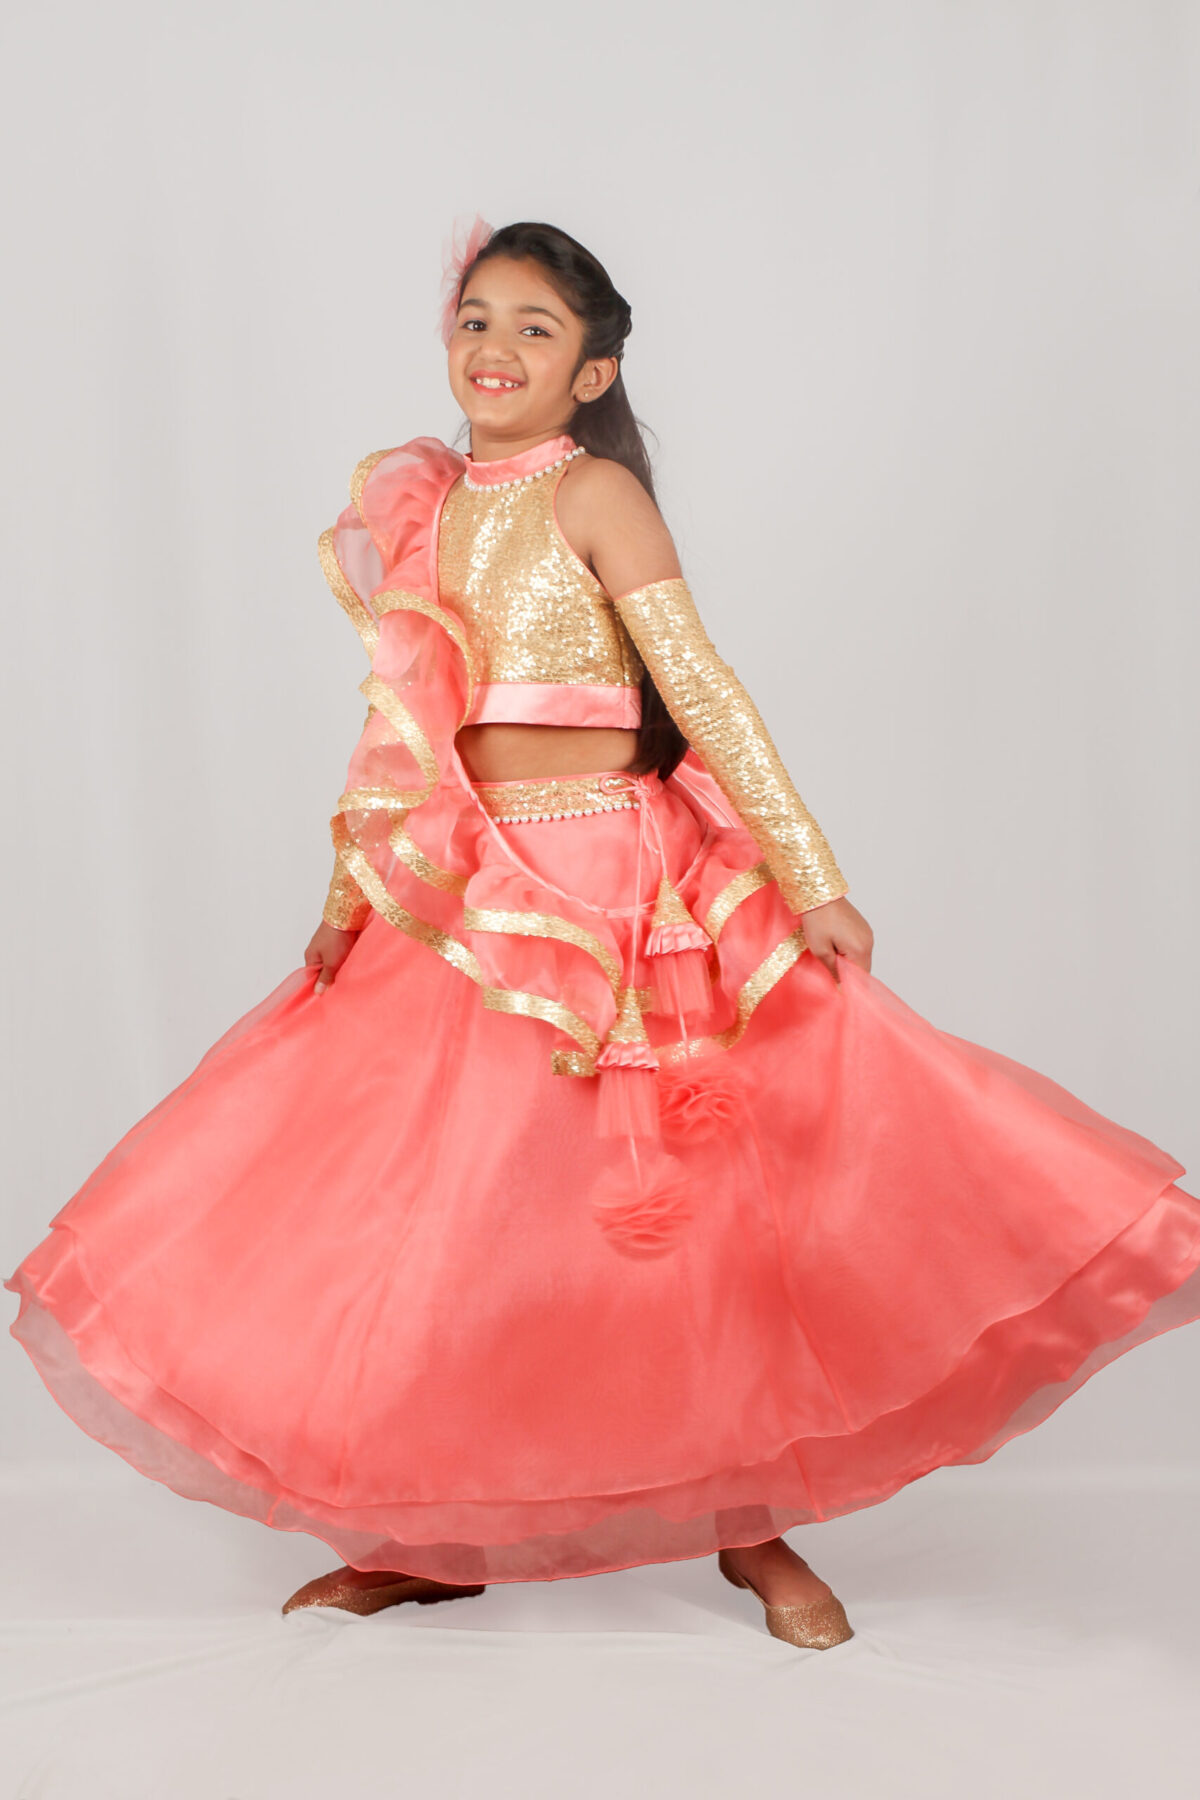 IMG 9988 3 scaled Blush Pink Princess style Lehenga Choli